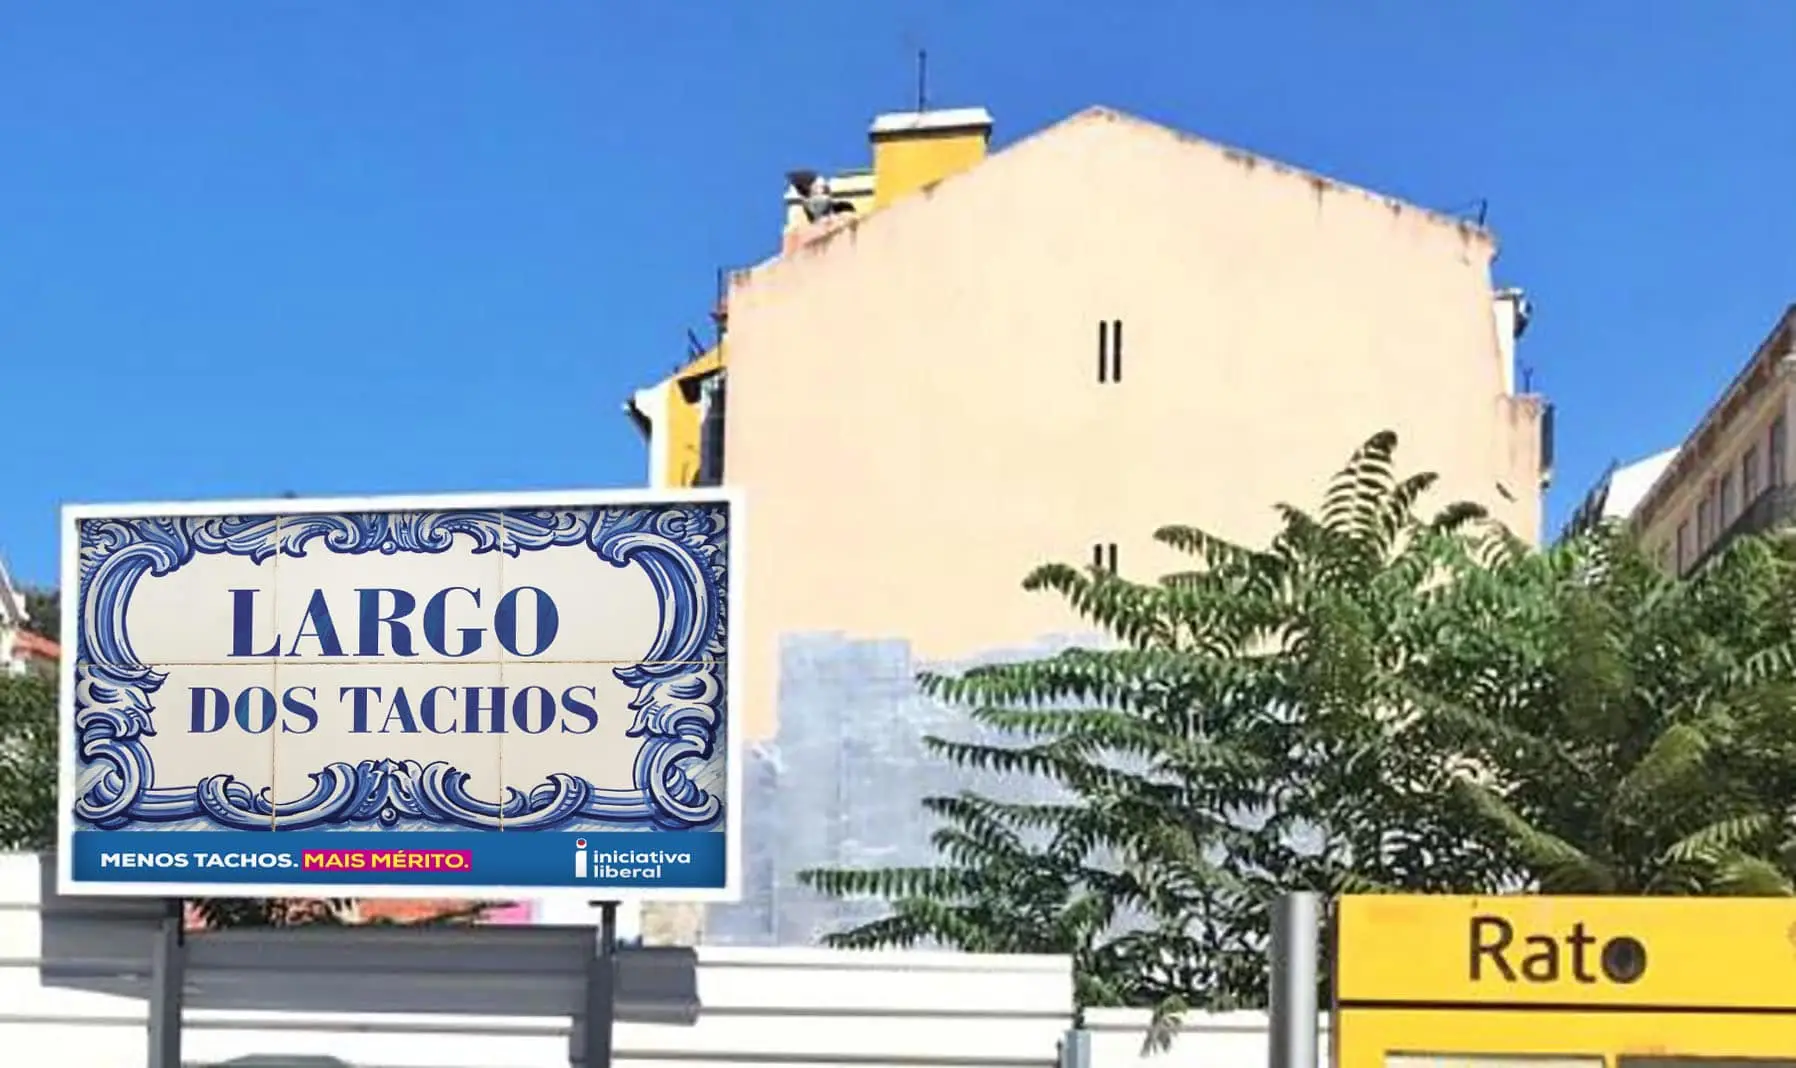 Largo do Rato dá lugar a "Largo dos Tachos" em novo outdoor da IL, após contratação de Sérgio Figueiredo